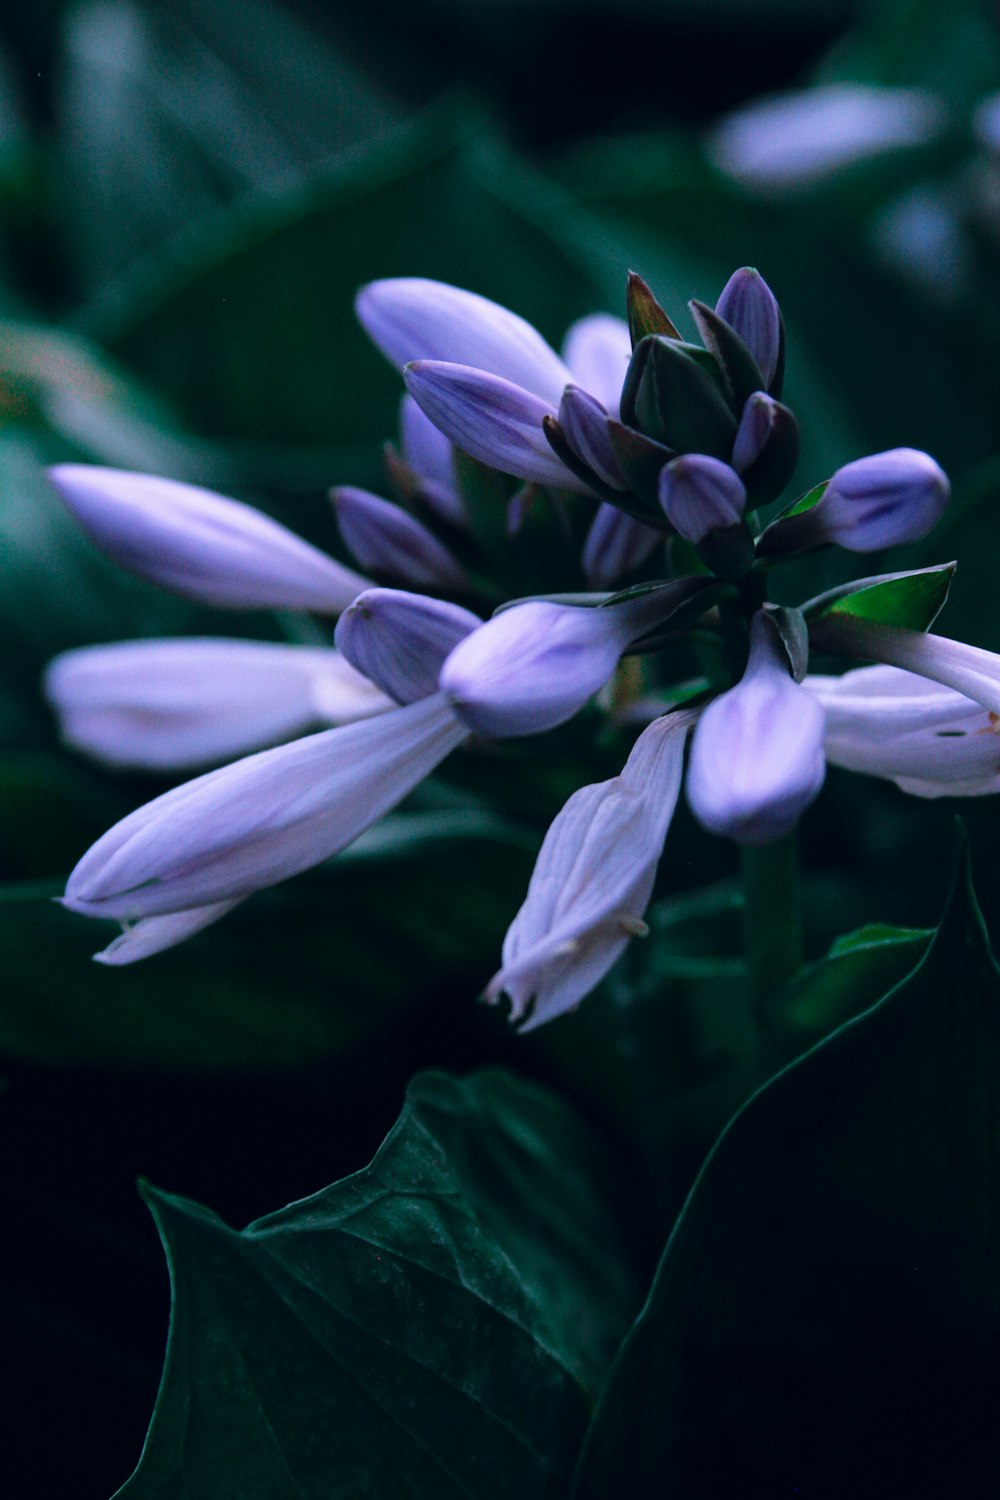 fleur violette et blanche en gros plan photographie